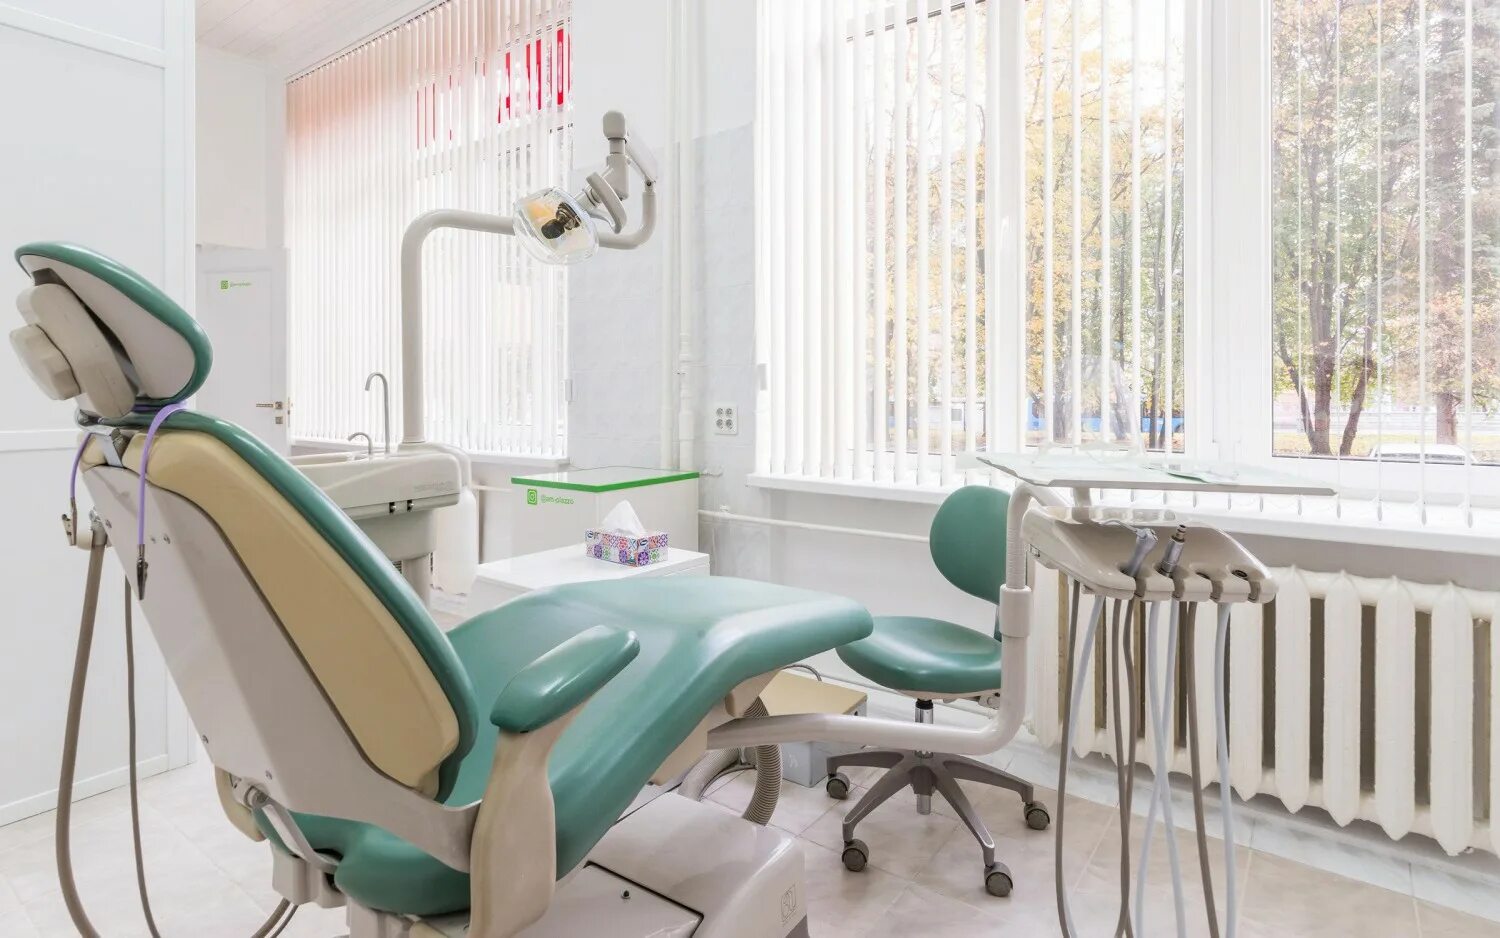 Ближайший медцентр. Стоматология ам клиник. Хирургический кабинет. Стоматология инструменты панорама кабинет. М-плаззо стоматология.